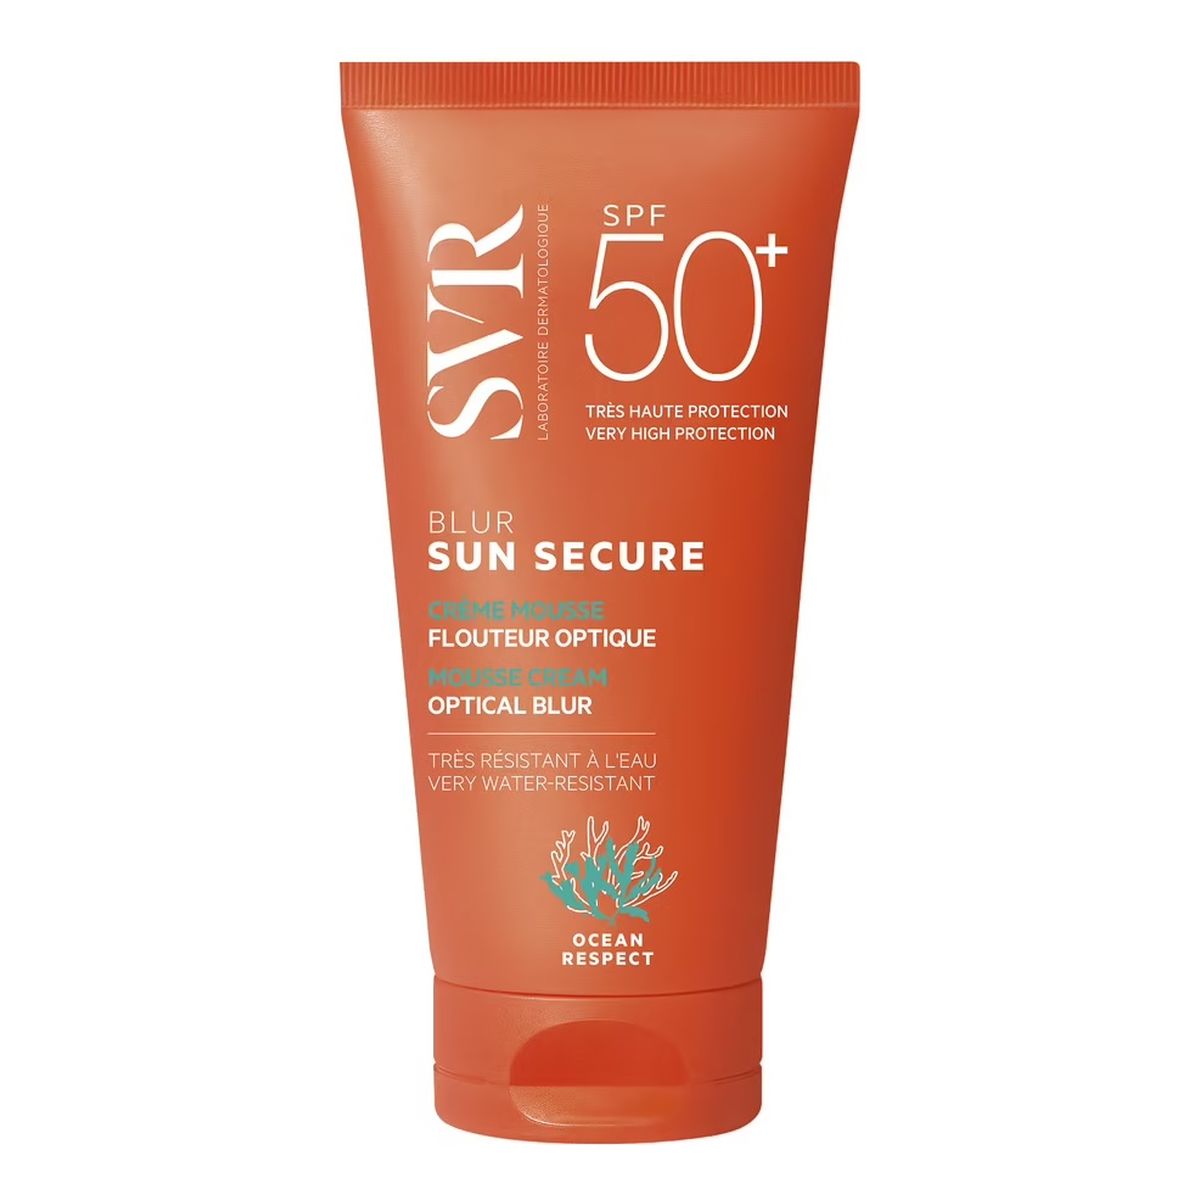 SVR Sun Secure Blur SPF50+ ochronny Krem optycznie ujednolicający skórę 50ml